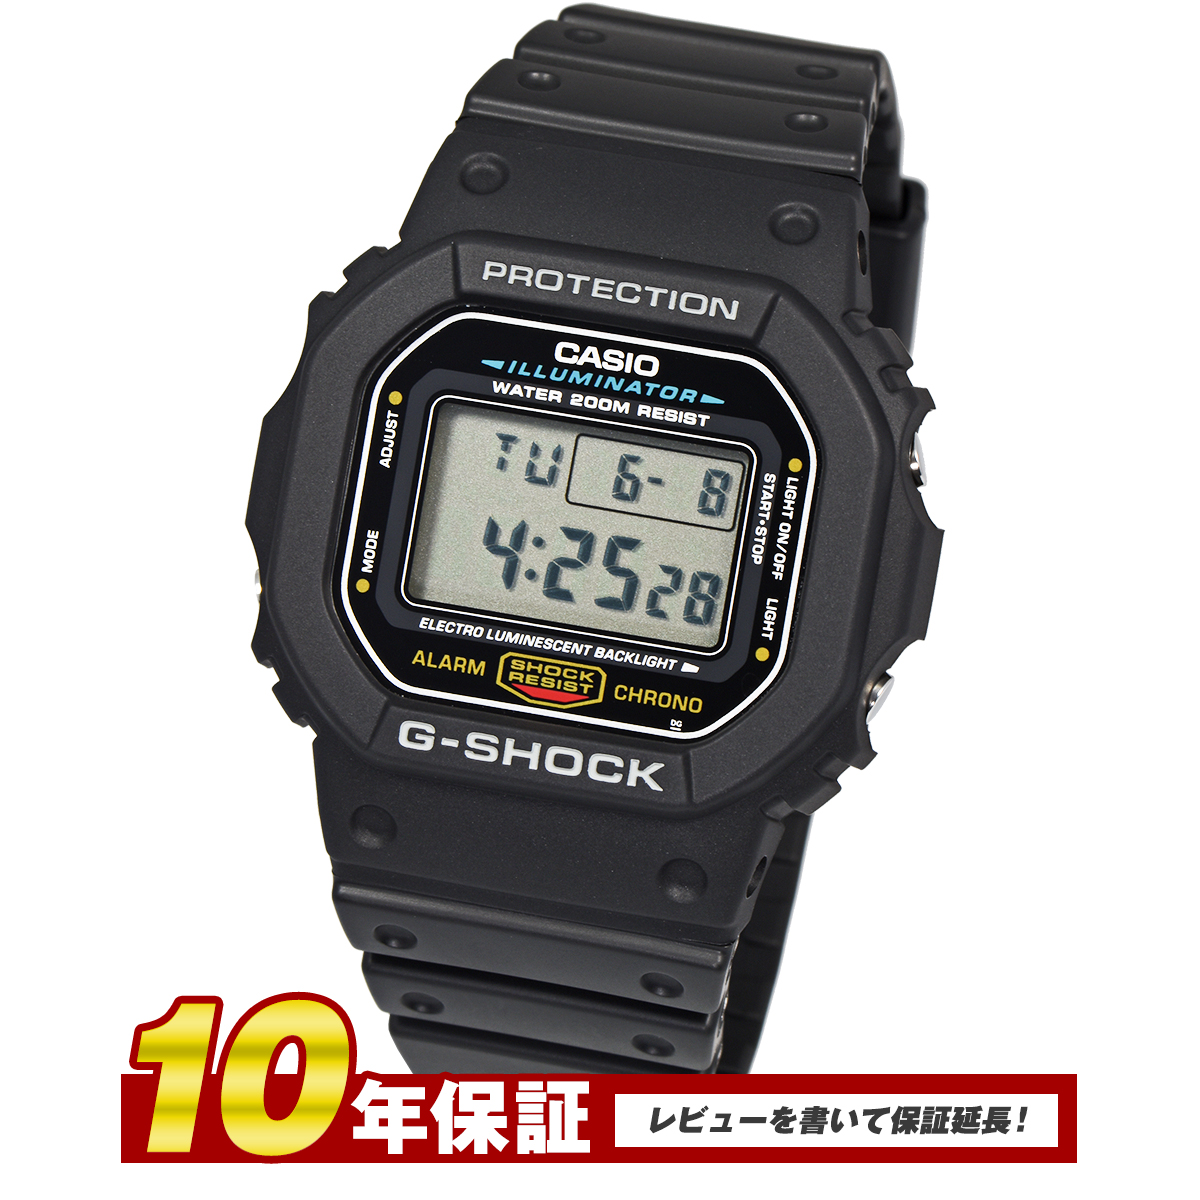 【楽天市場】【10年保証】G-SHOCK スピードモデル Gショック ジーショック カシオ 腕時計 DW-5600E-1 クリスマス